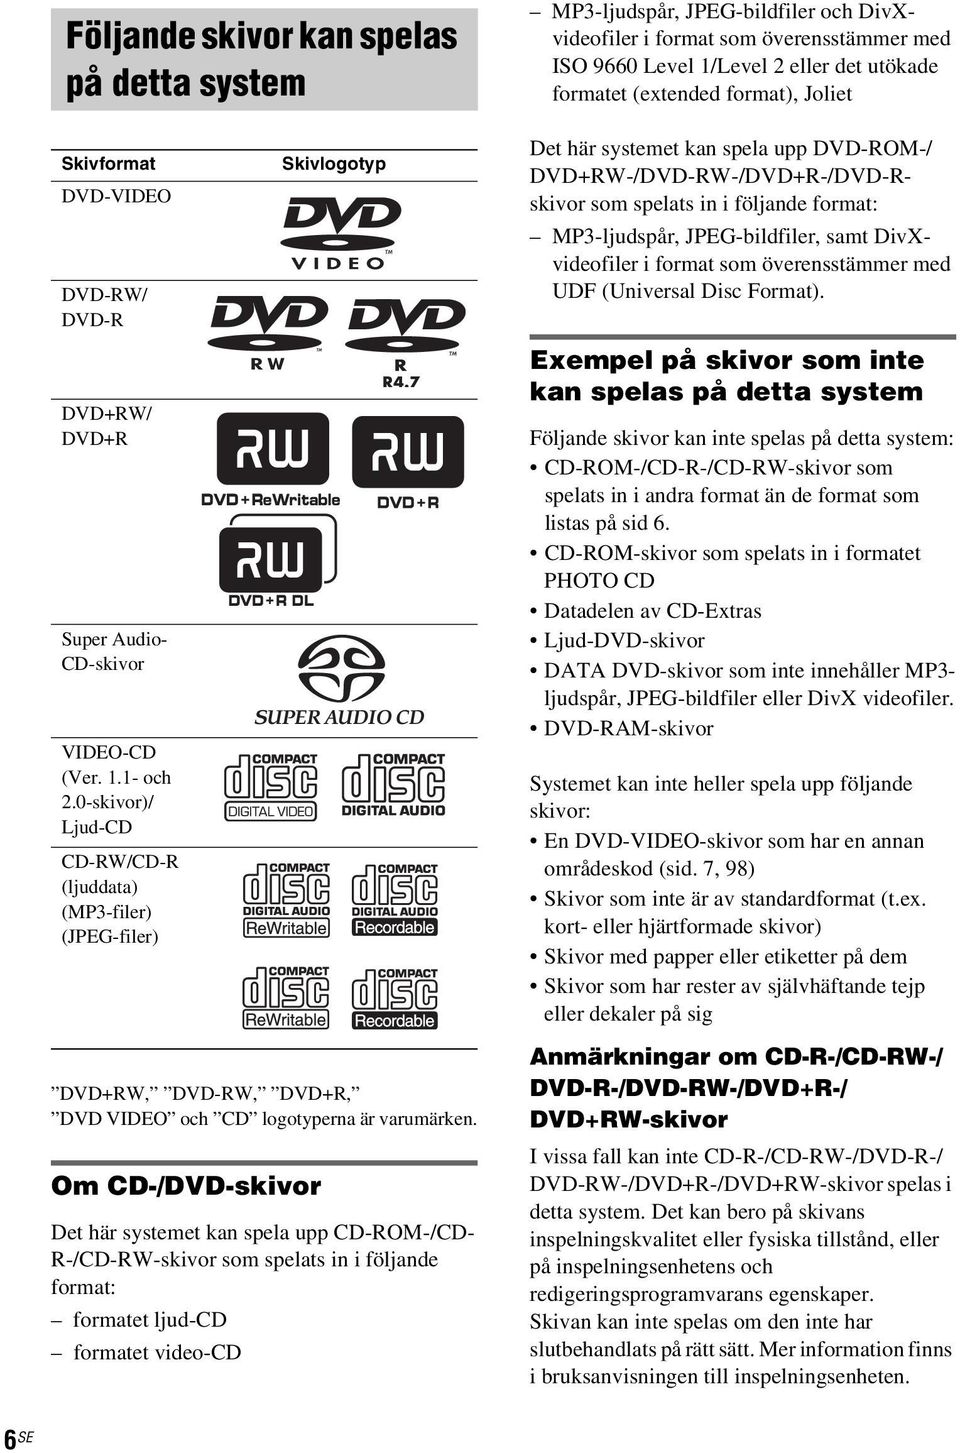 0-skivor)/ Ljud-CD CD-RW/CD-R (ljuddata) (MP3-filer) (JPEG-filer) Skivlogotyp Det här systemet kan spela upp DVD-ROM-/ DVD+RW-/DVD-RW-/DVD+R-/DVD-Rskivor som spelats in i följande format: